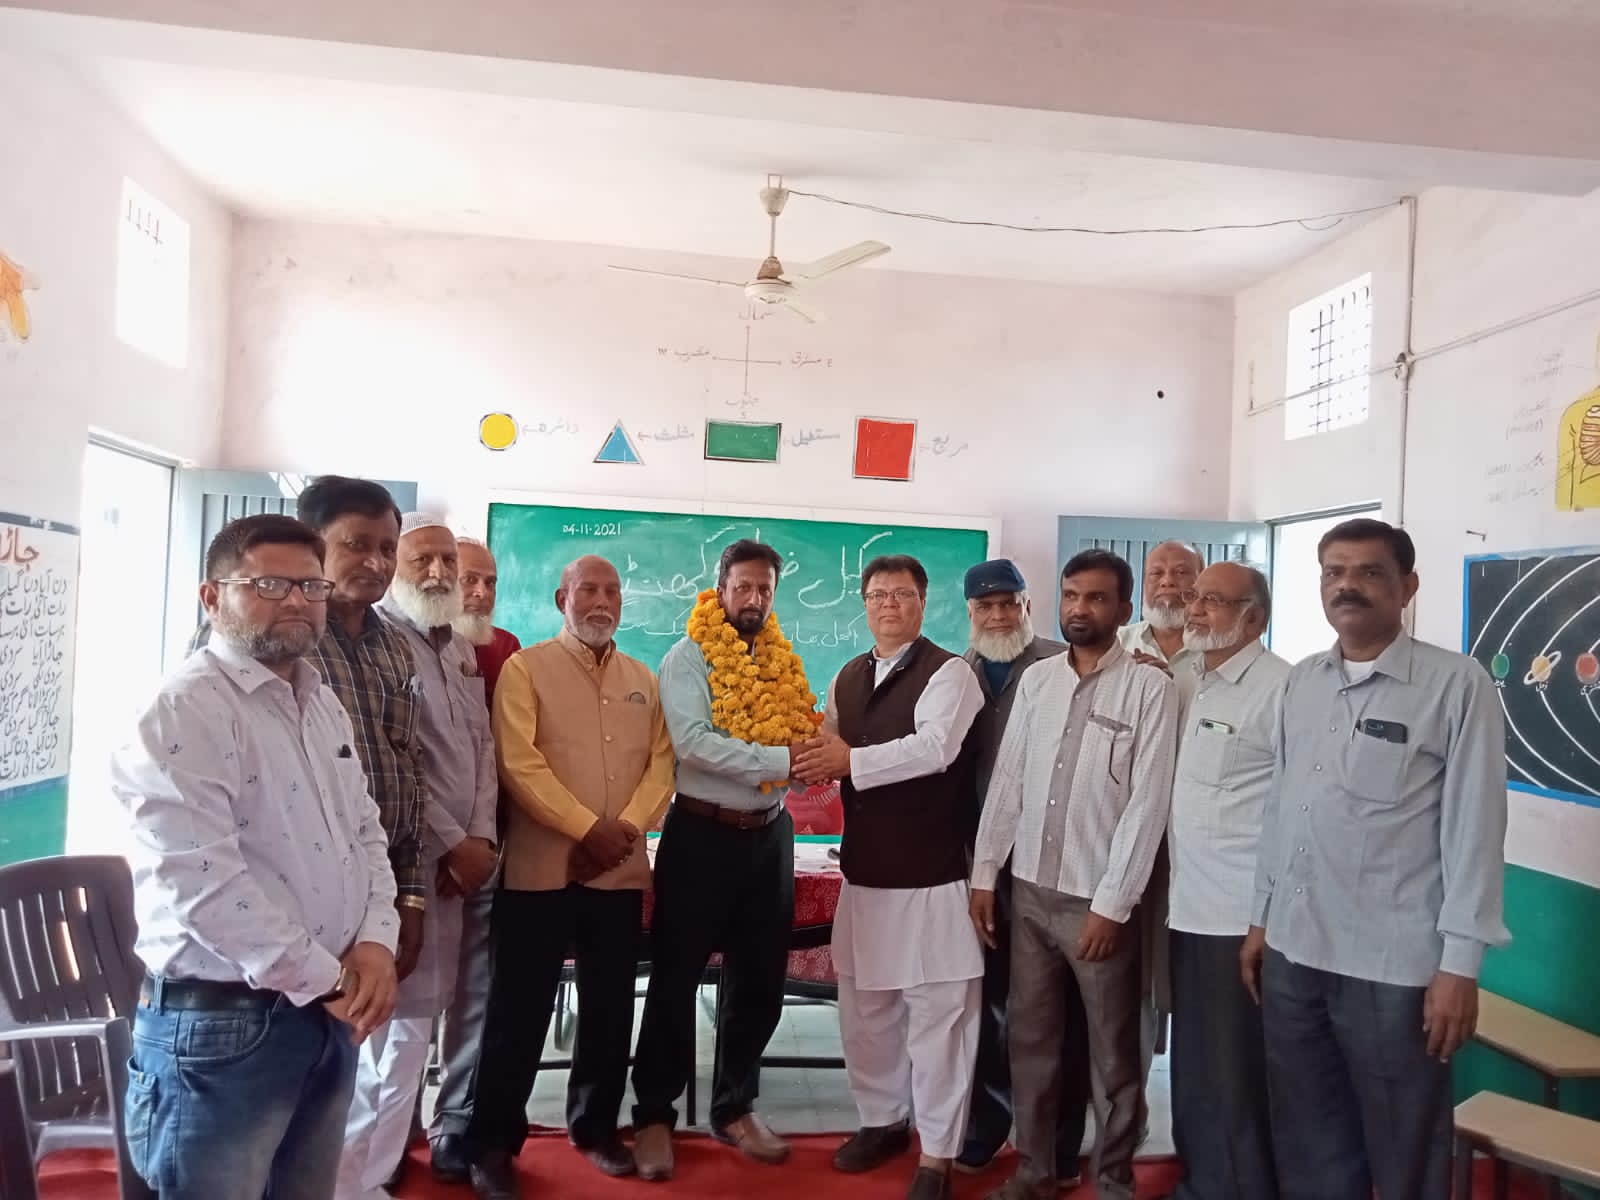 अखिल भारतीय उर्दू शिक्षक संघ की खंडवा जिला इकाई का हुआ गठन | New India Times